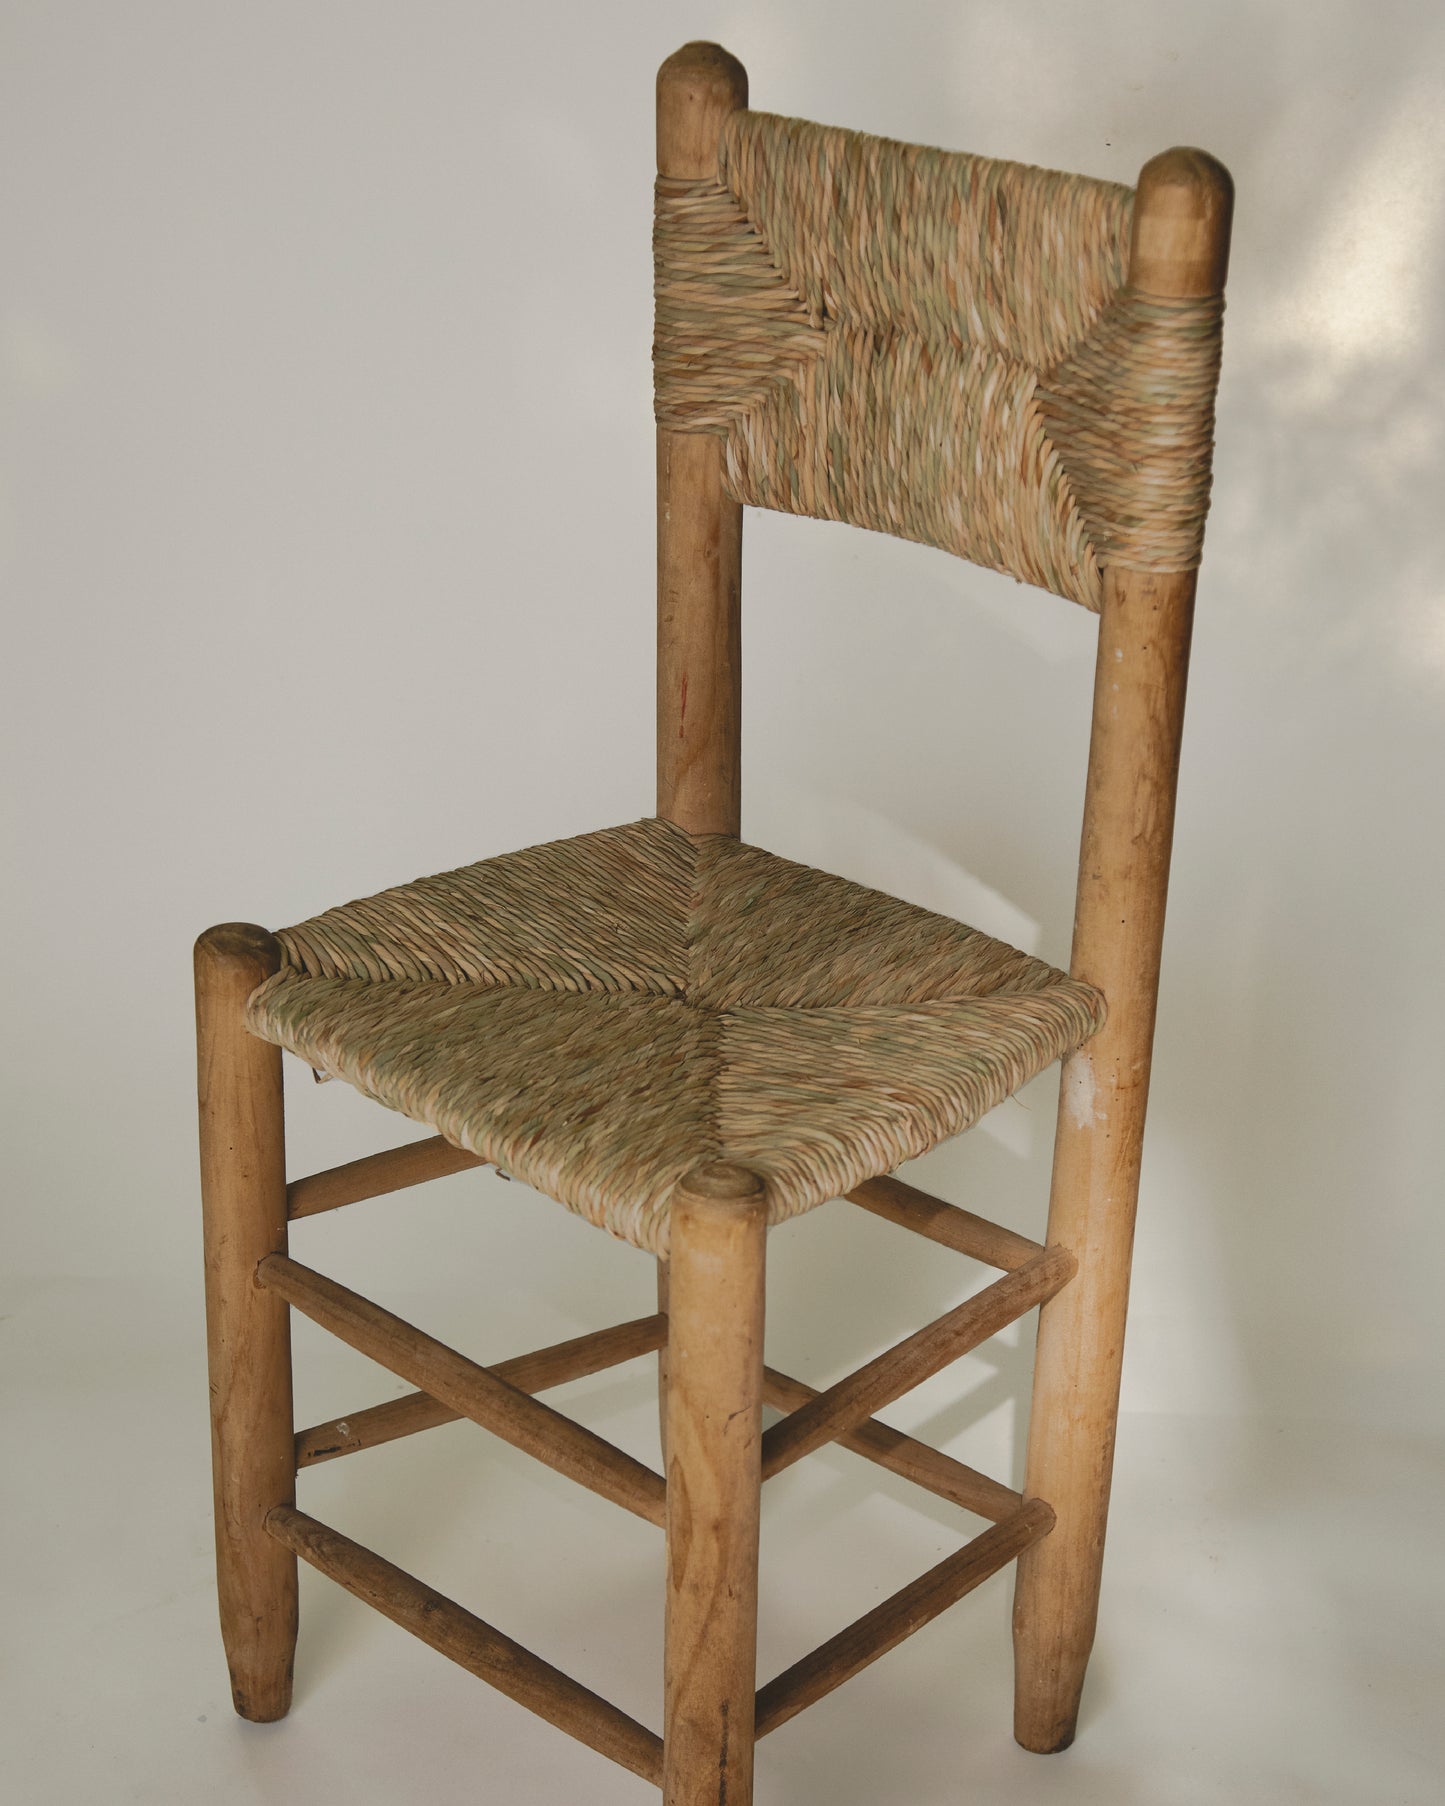 cattail chair